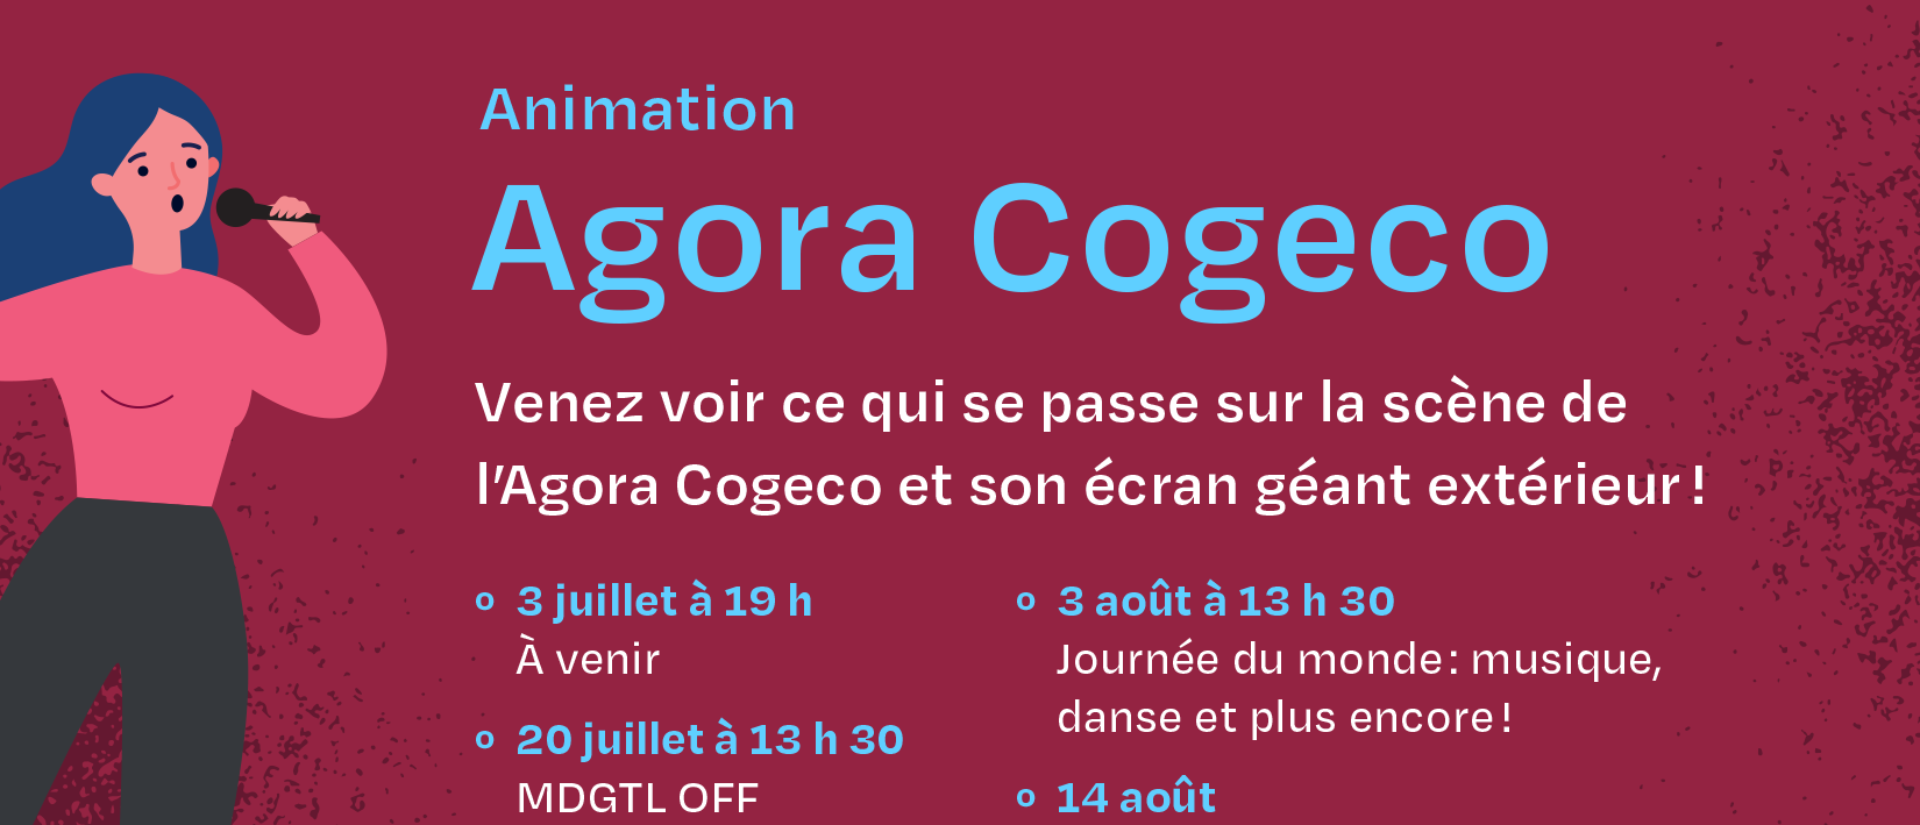 Animation à l'Agora Cogeco